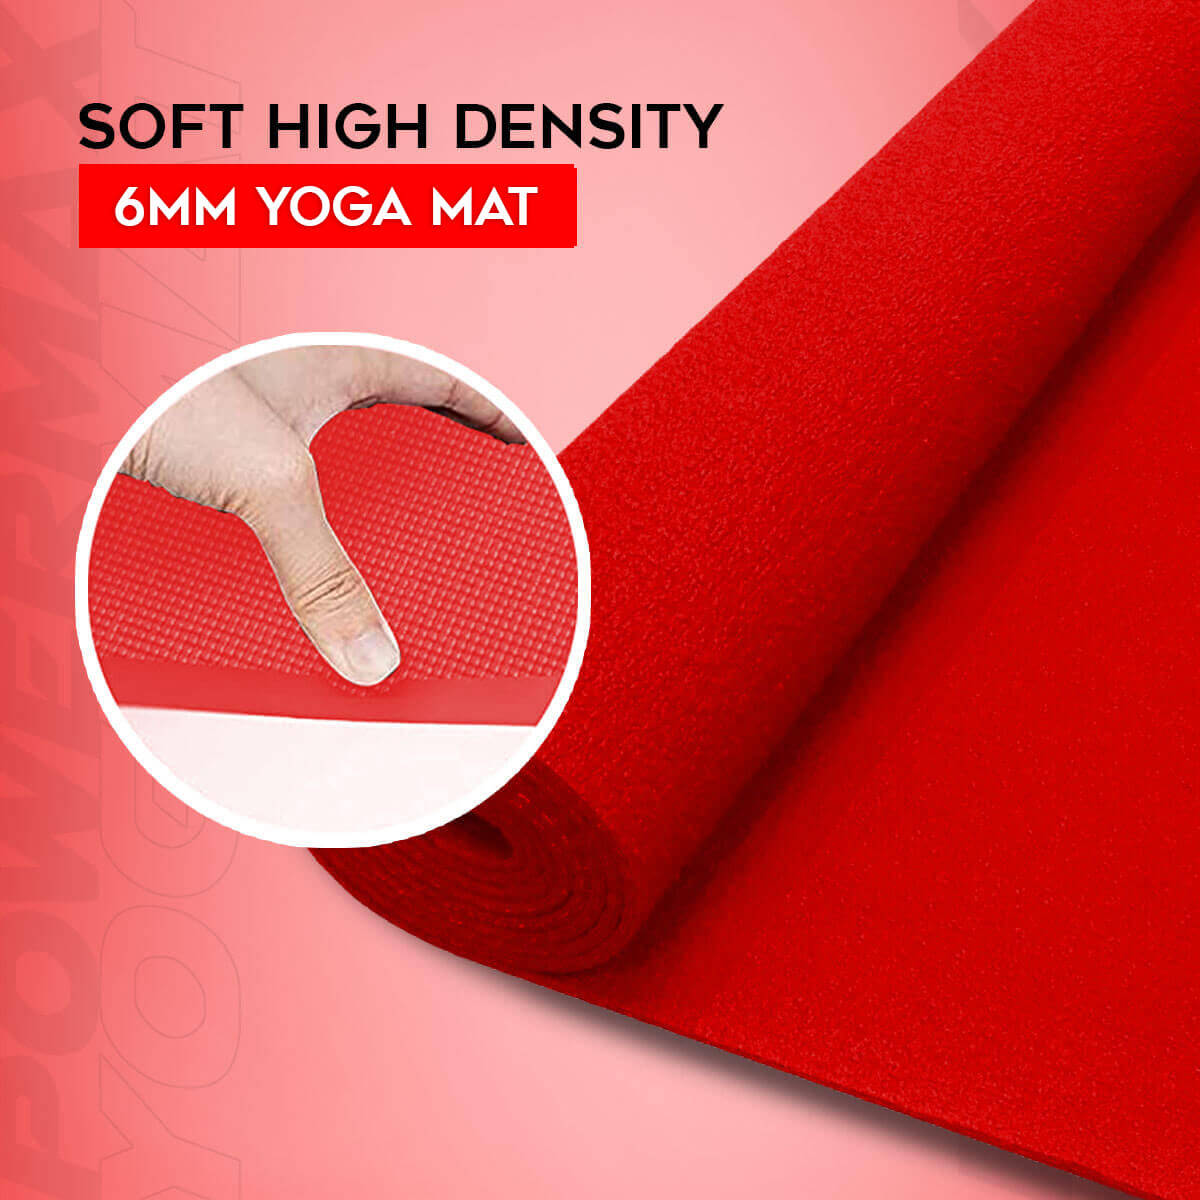 buy powermax 6mm thick premium exercise red color yoga mat